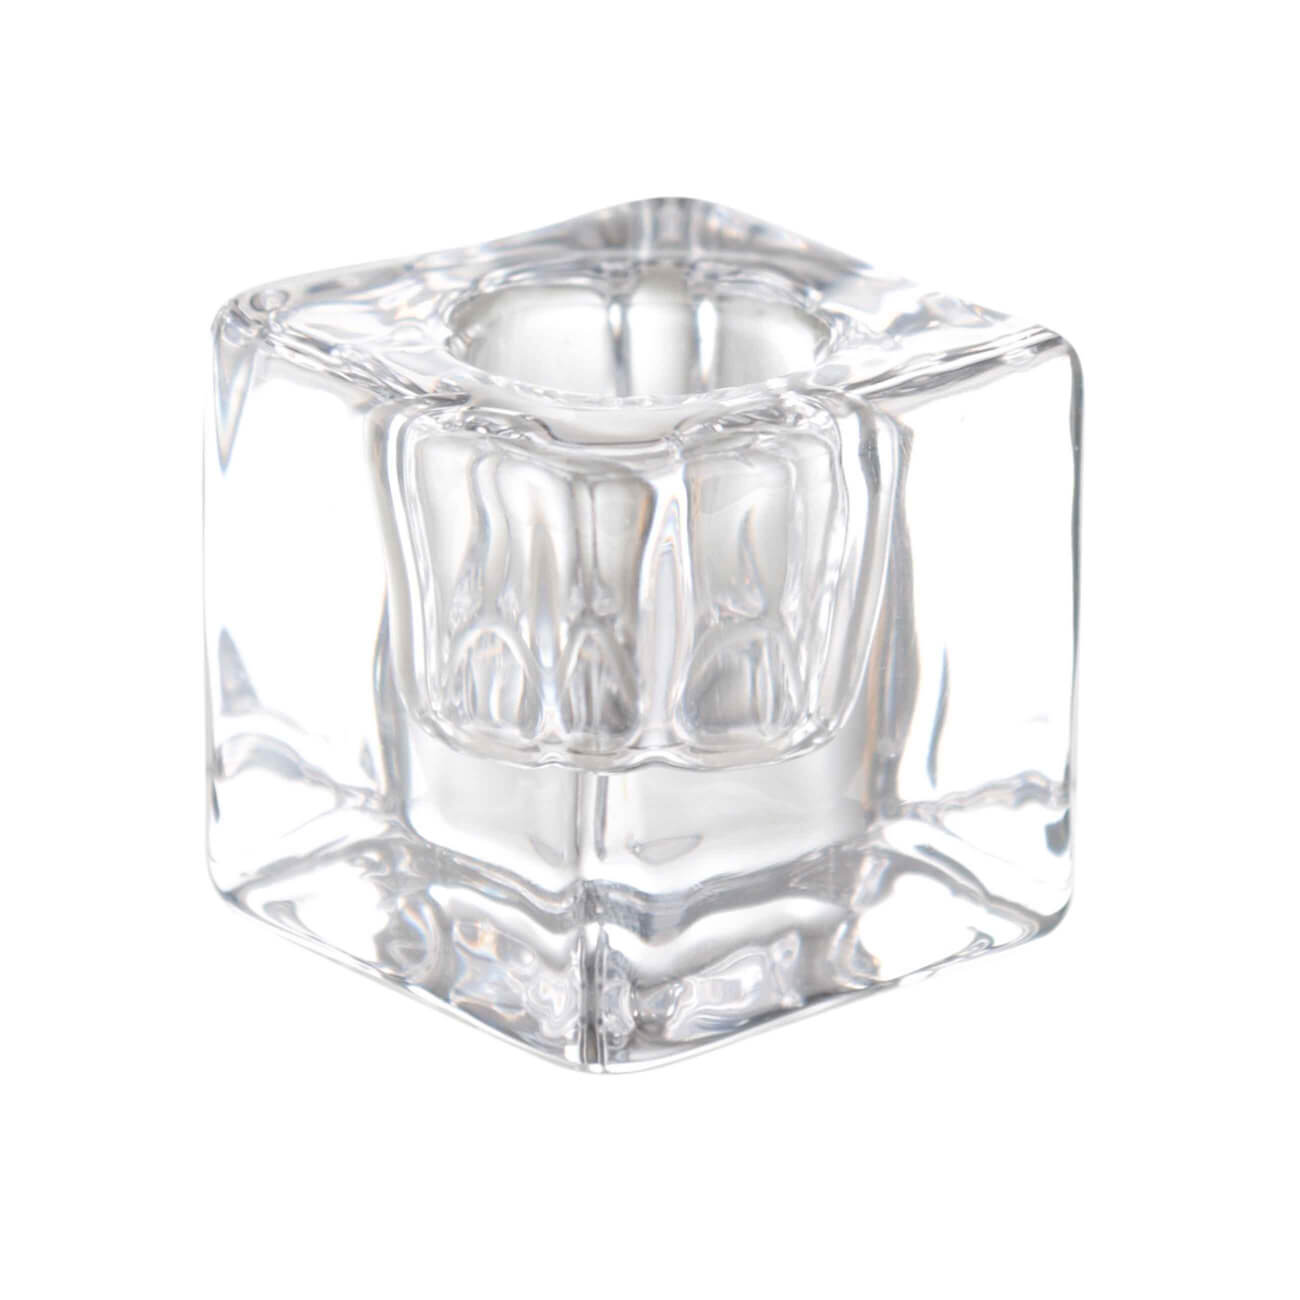 подсвечник 10 см для чайной свечи стекло cube Подсвечник, 4 см, для тонкой свечи, стекло, Cube